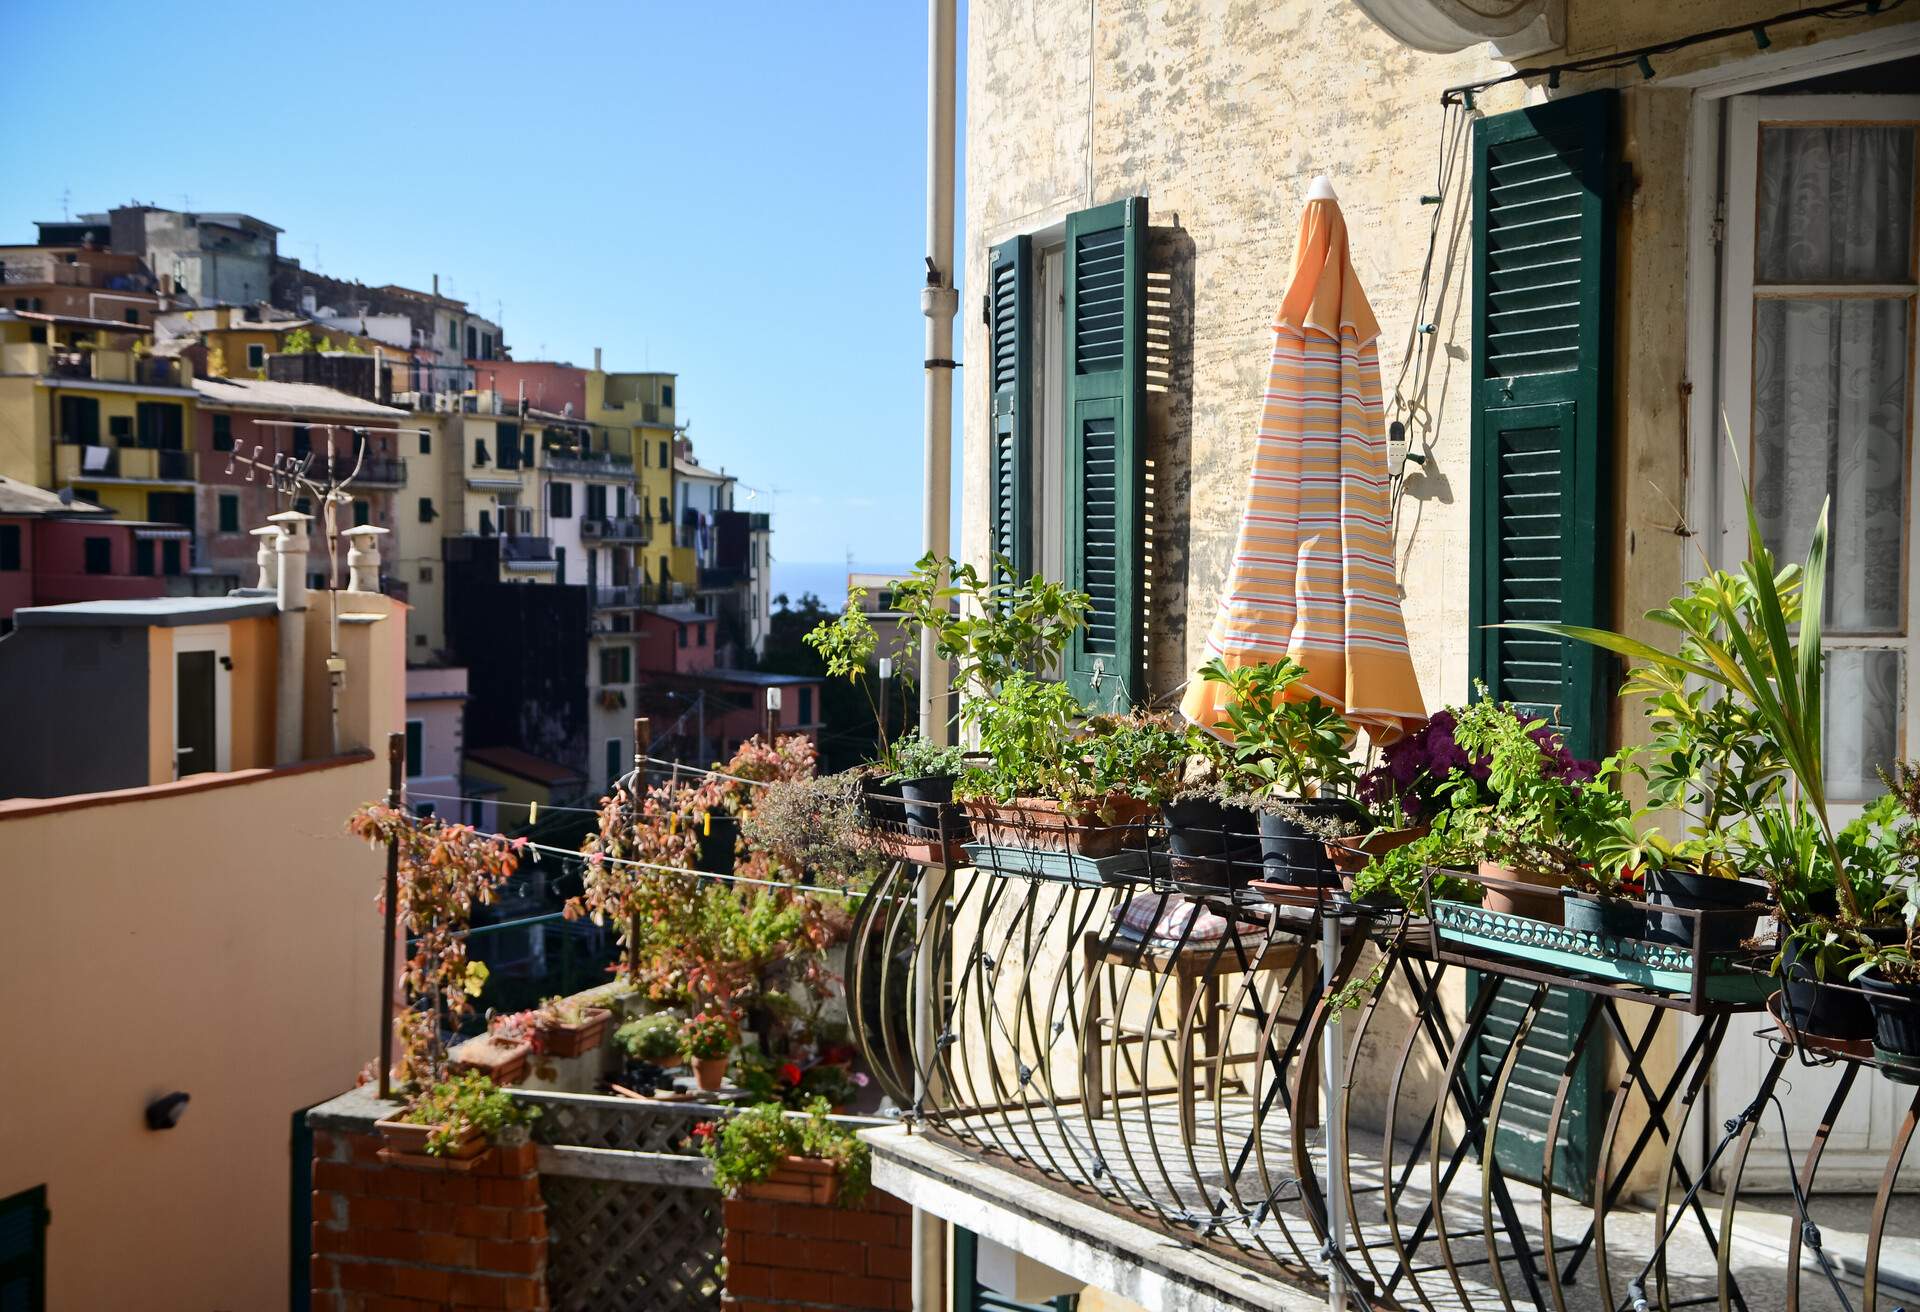 Cinque Terre - Italy balcony